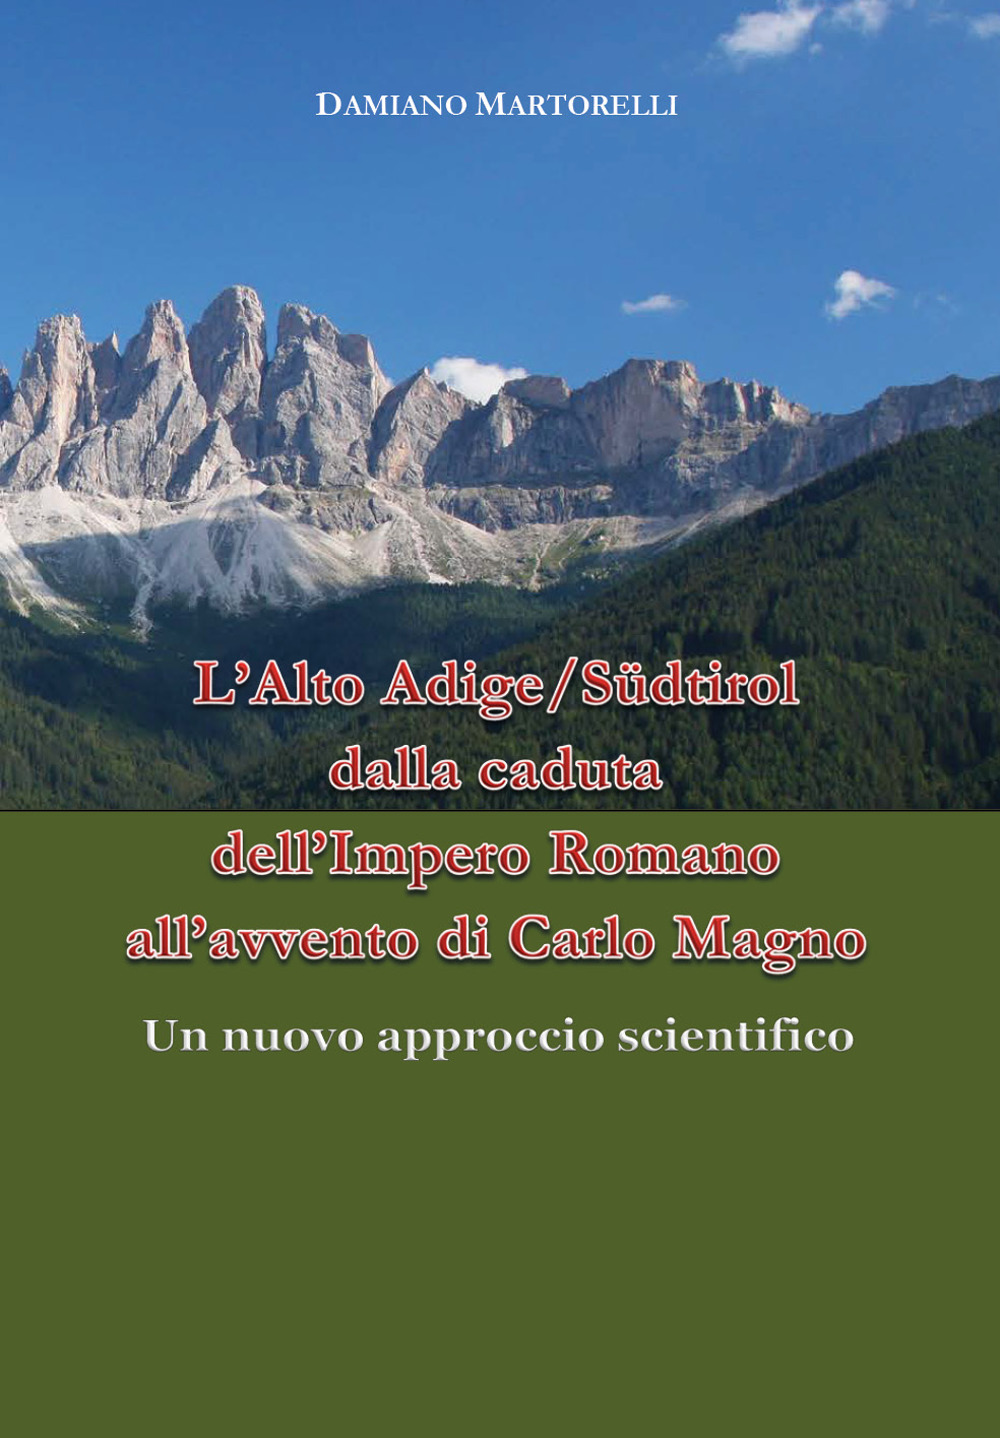 L'Alto Adige/Südtirol dalla caduta dell'Impero Romano all'avvento di Carlo Magno (V-VIII secolo). Un nuovo approccio scientifico